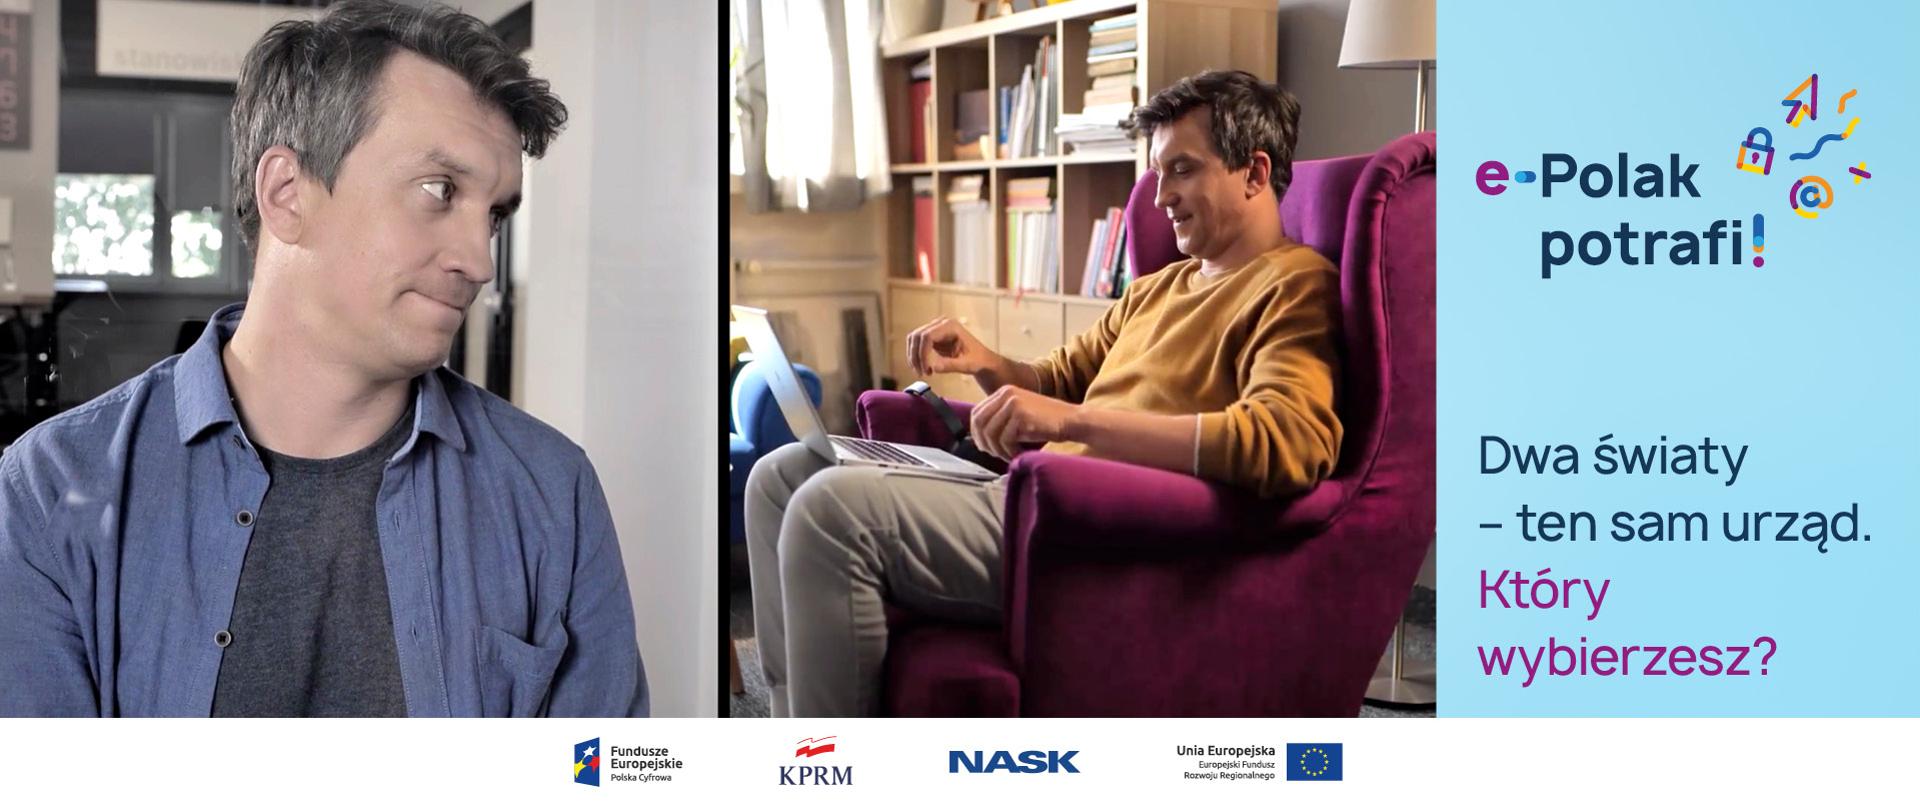 Ekran podzielony na dwie części. Po lewej stronie -Michał Czernecki w urzędzie, po prawej - Michał Czernecki w domu, siedzi na fotelu z laptopem na kolanach. Obok tekst: e-Polak potrafi! Dwa światy - ten sam urząd. Który wybierzesz?